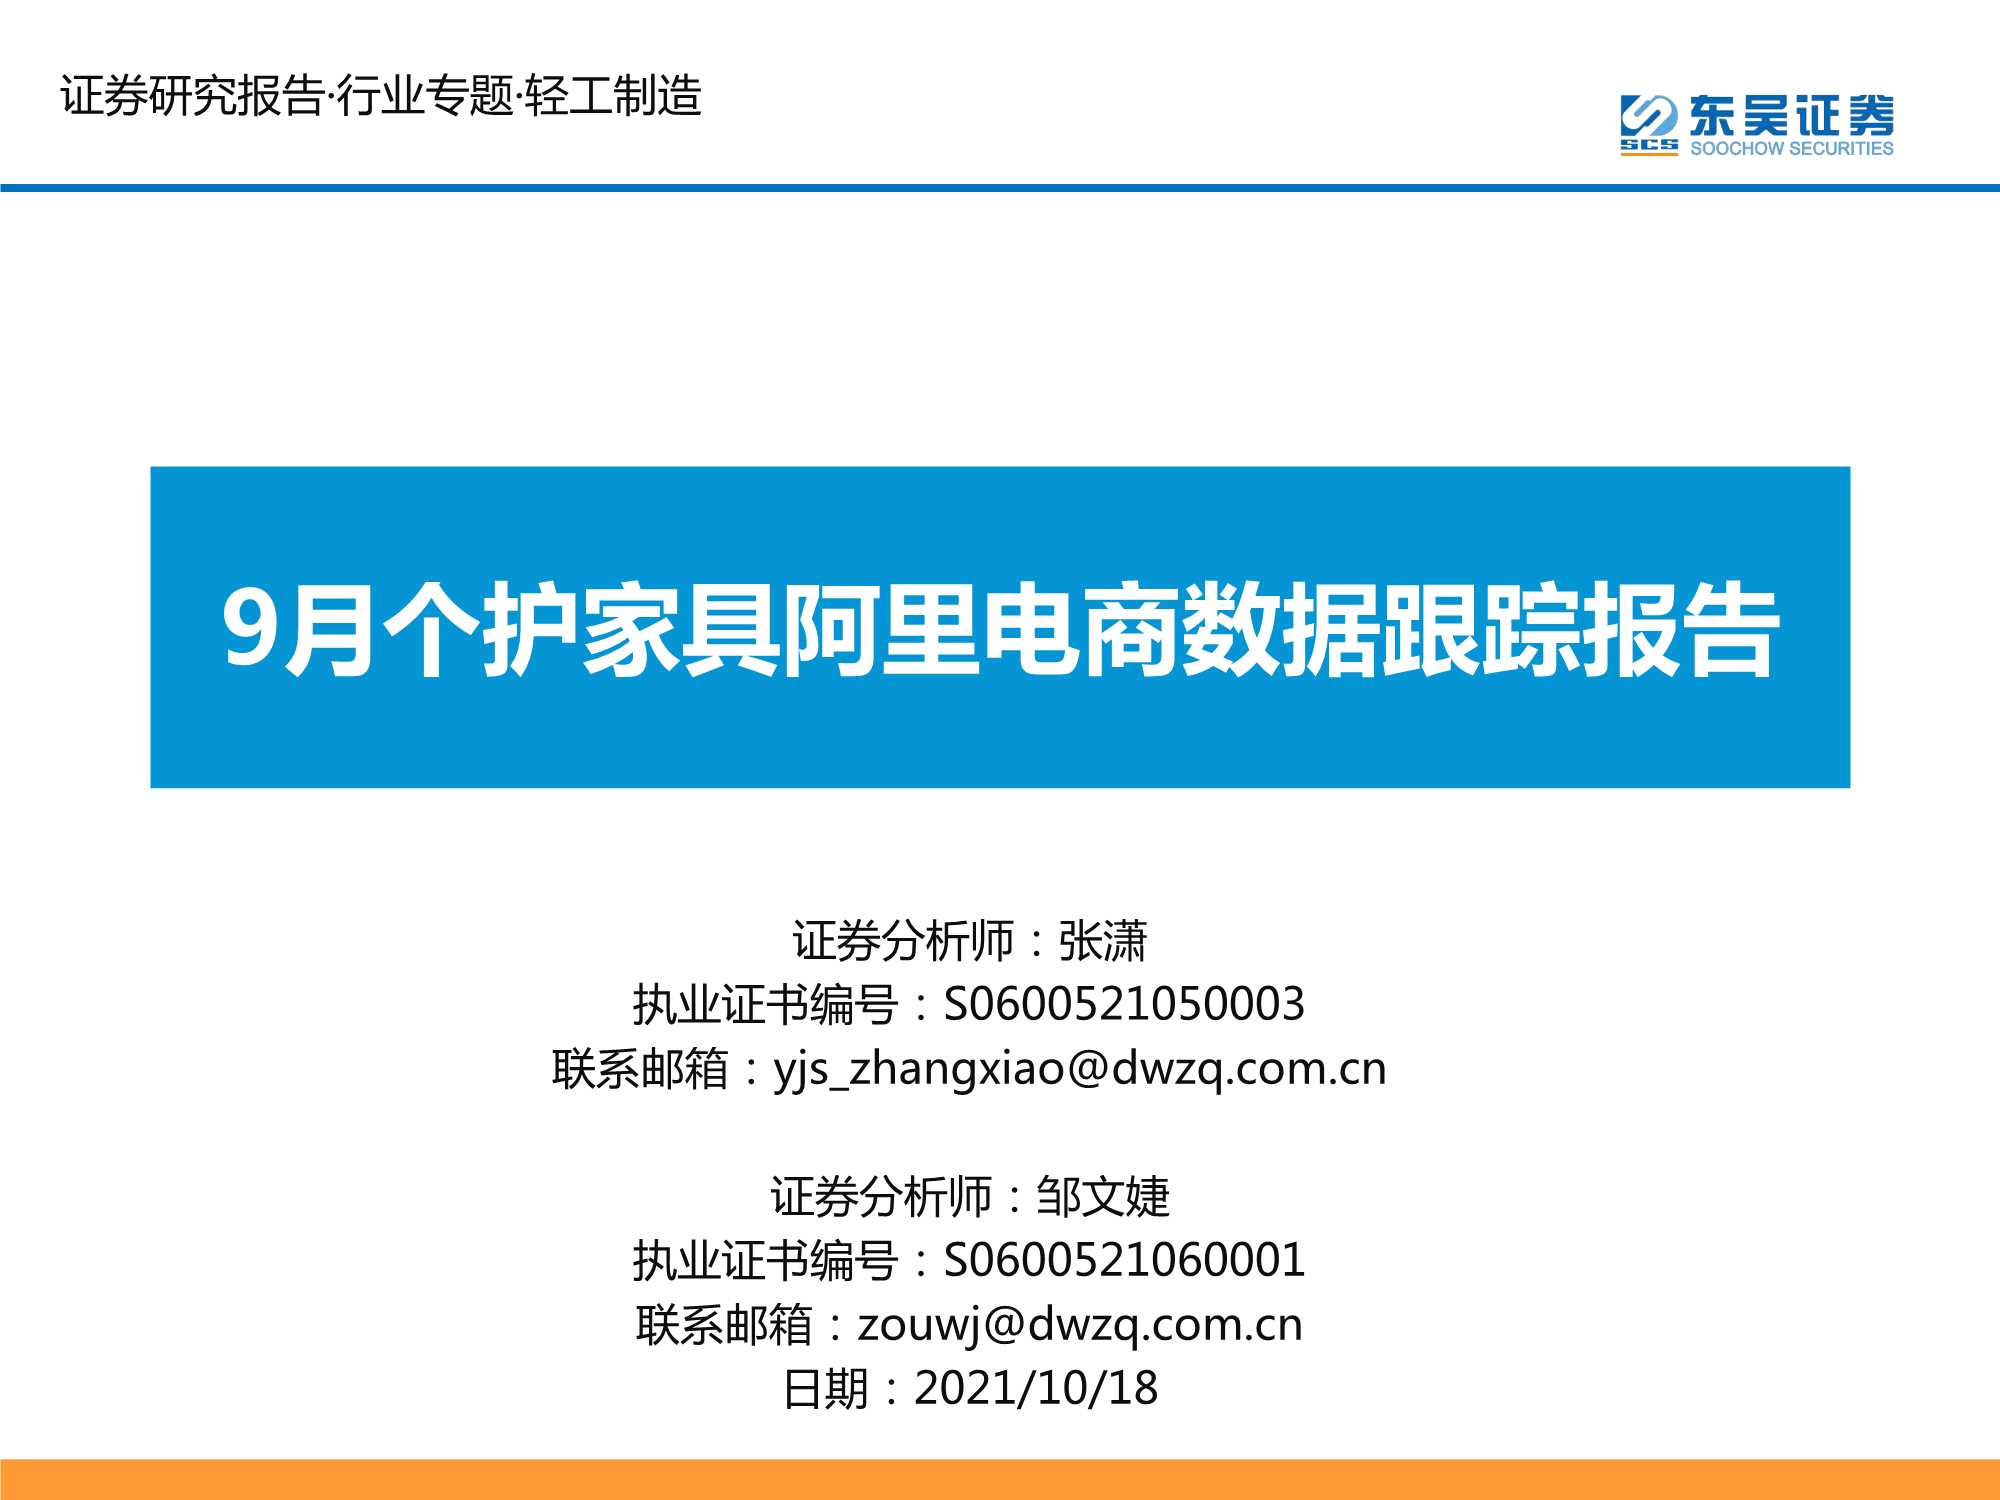 东吴证券-轻工制造行业：9月个护家具阿里电商数据跟踪报告-20211018-26页